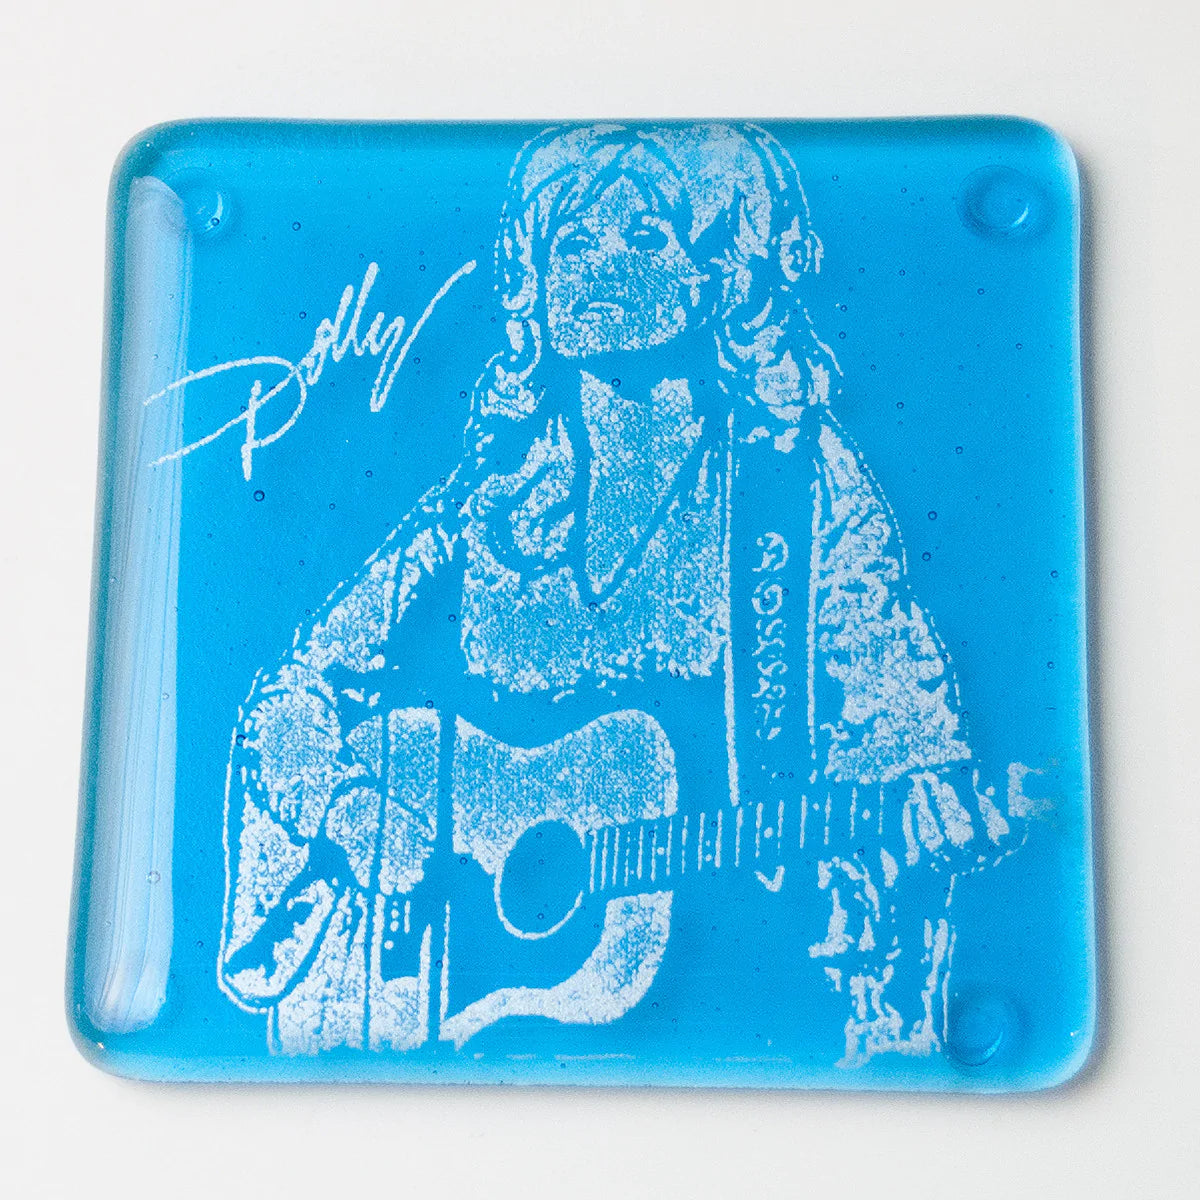 Dolly Parton Glass Tile & Coaster